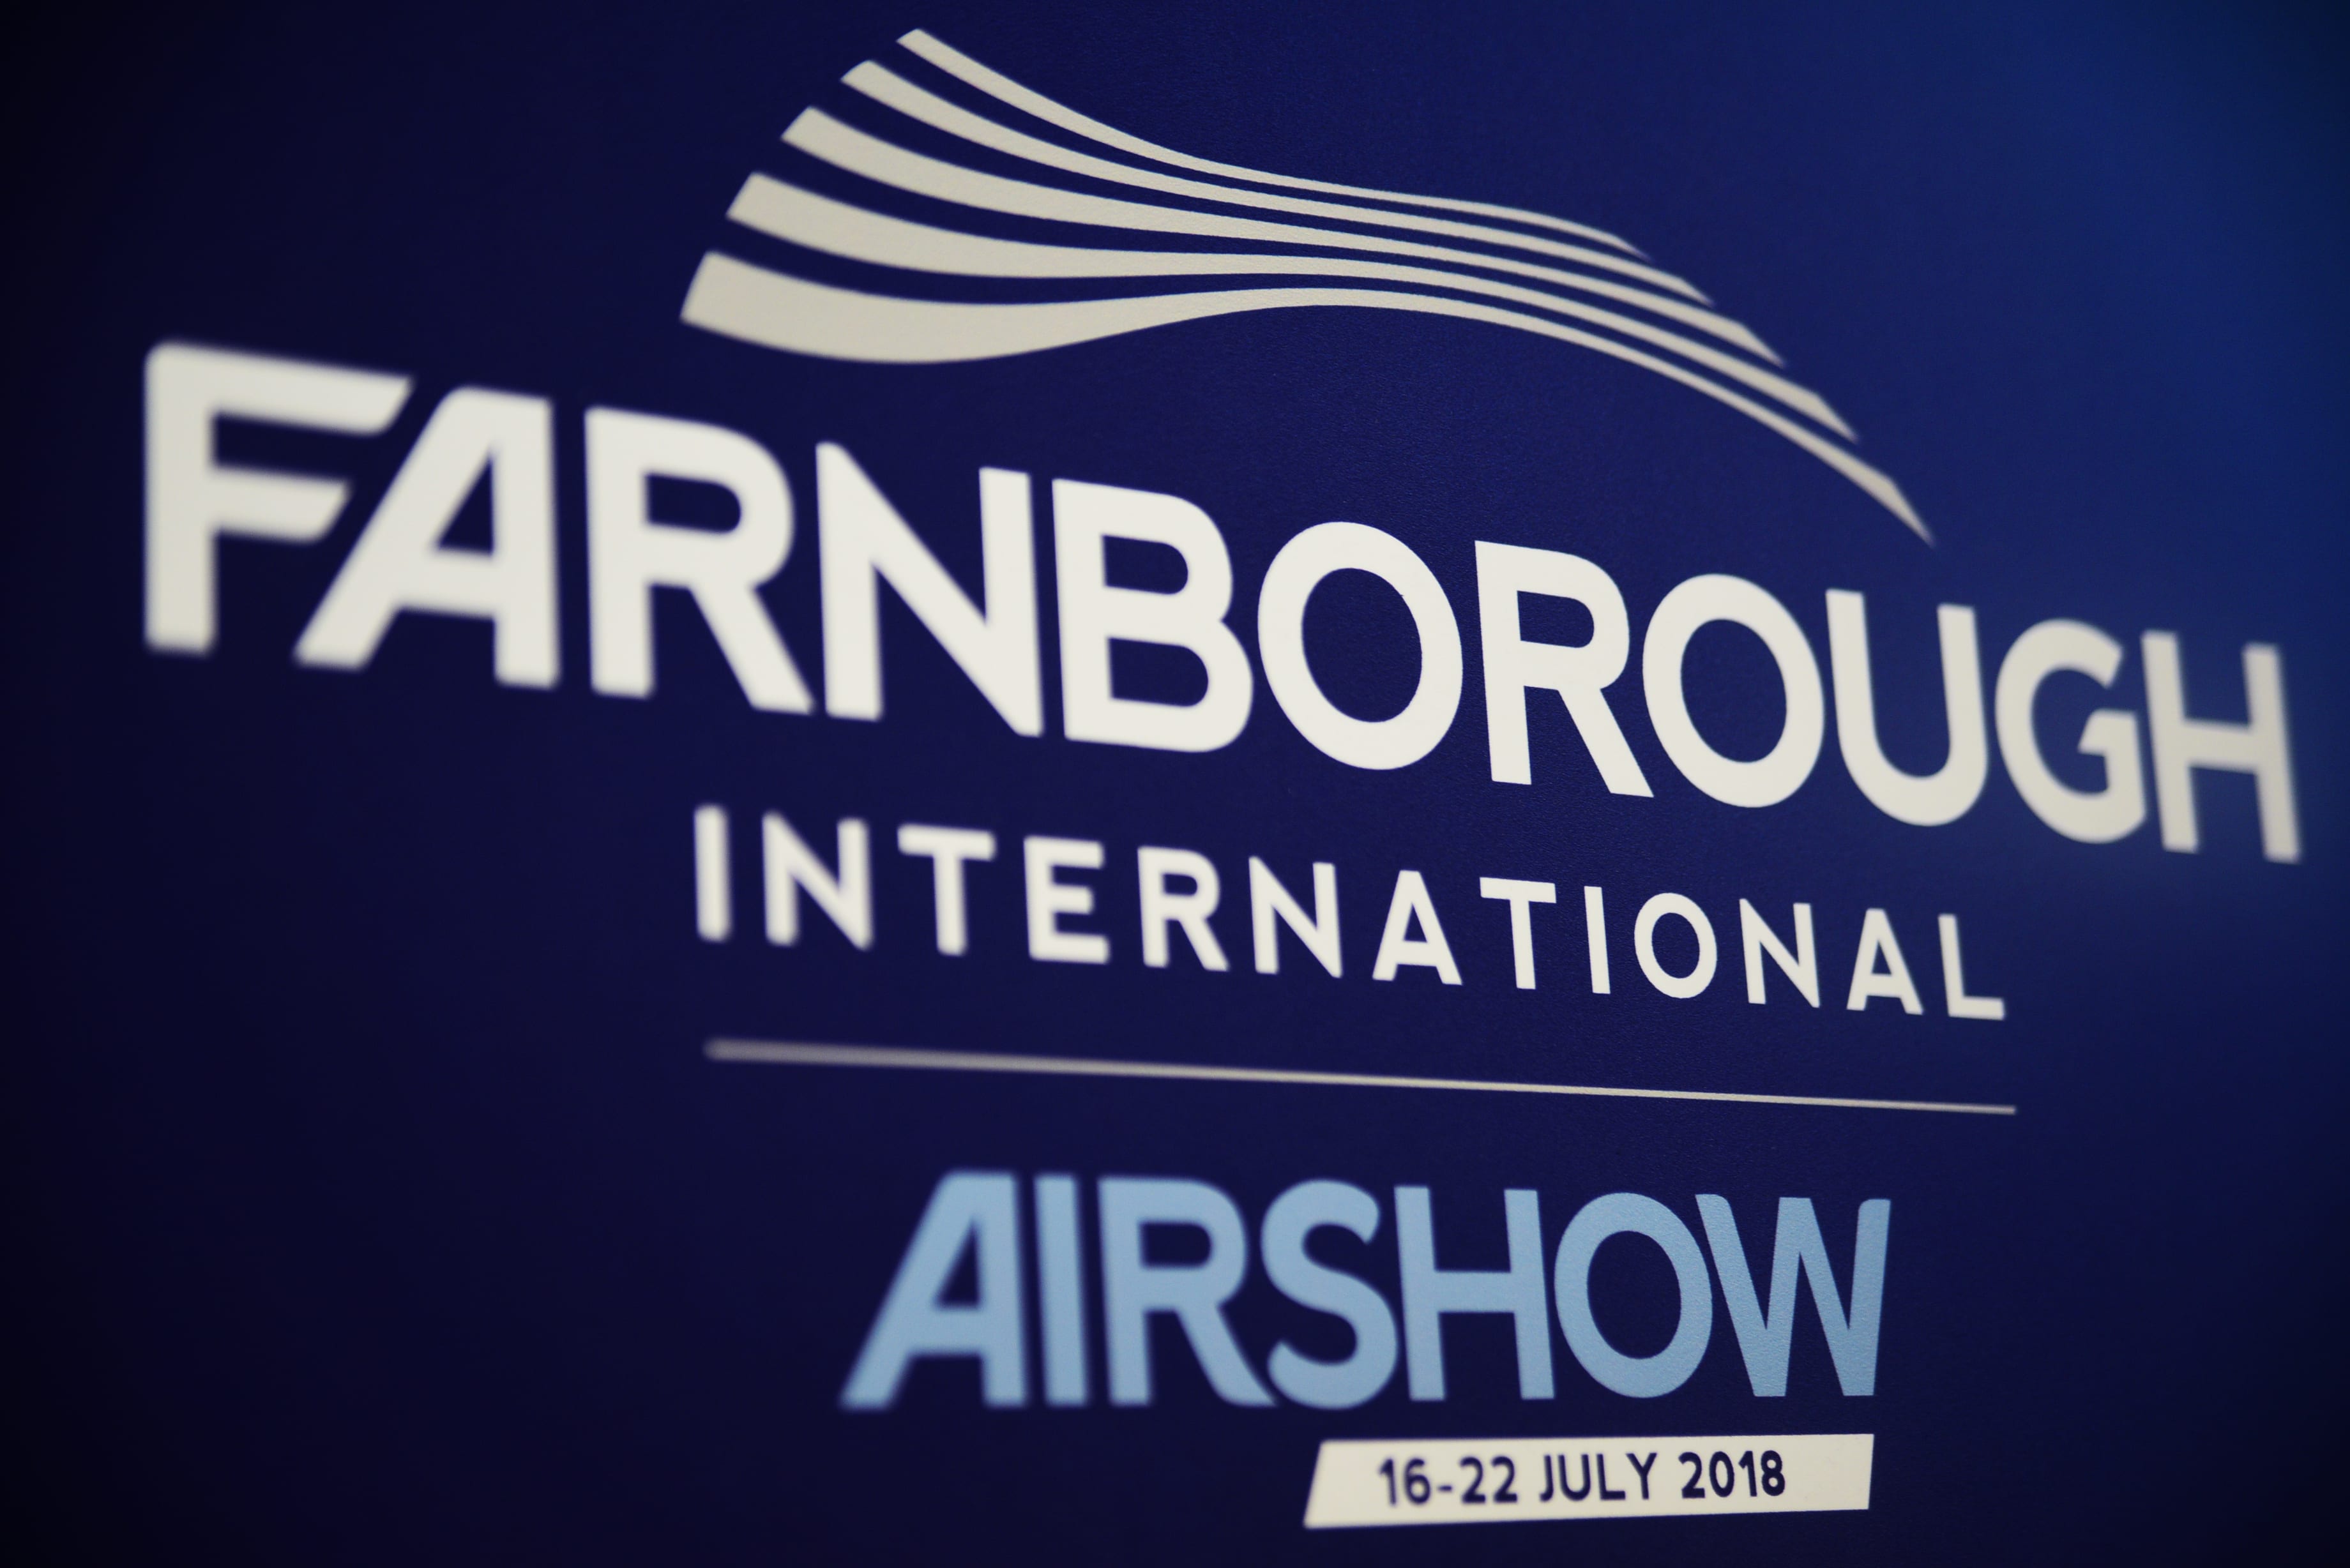 Resultado de imagen para farnborough airshow 2018